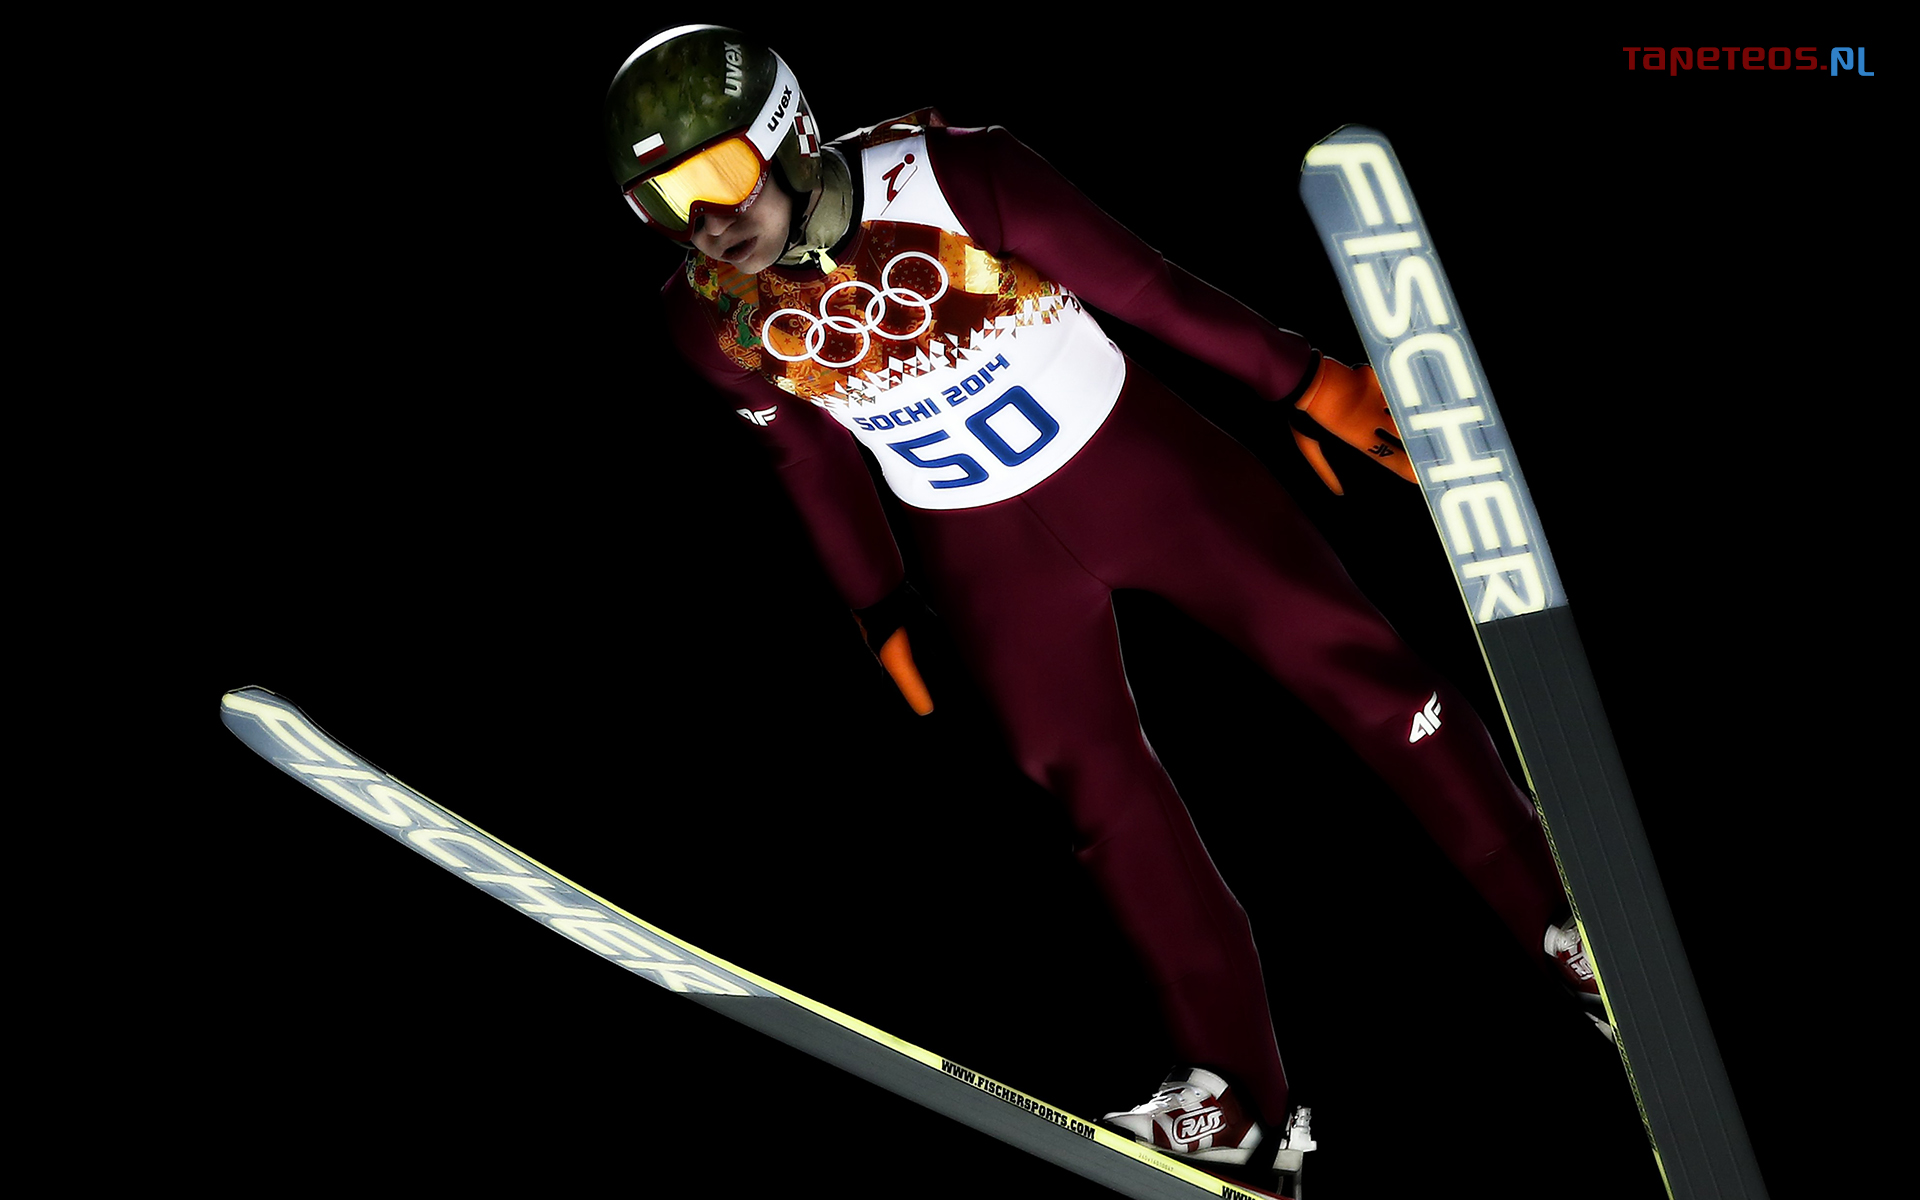 Soczi 2014 Zimowe Igrzyska Olimpijskie 012 Skoki, Kamil Stoch